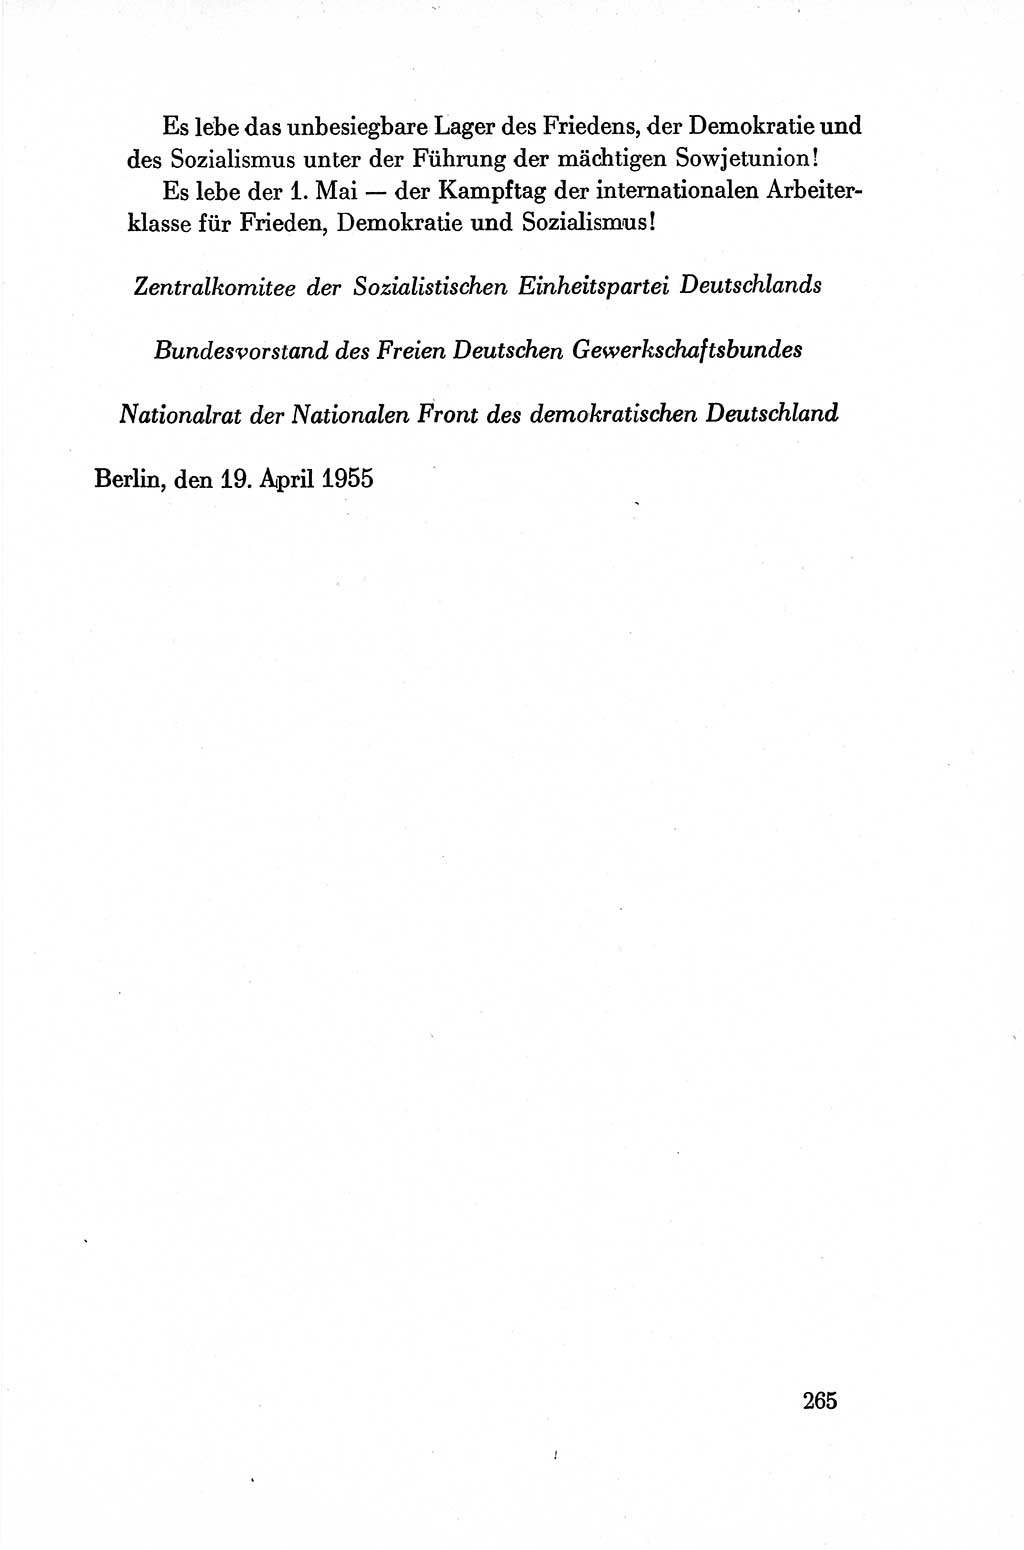 Dokumente der Sozialistischen Einheitspartei Deutschlands (SED) [Deutsche Demokratische Republik (DDR)] 1954-1955, Seite 265 (Dok. SED DDR 1954-1955, S. 265)